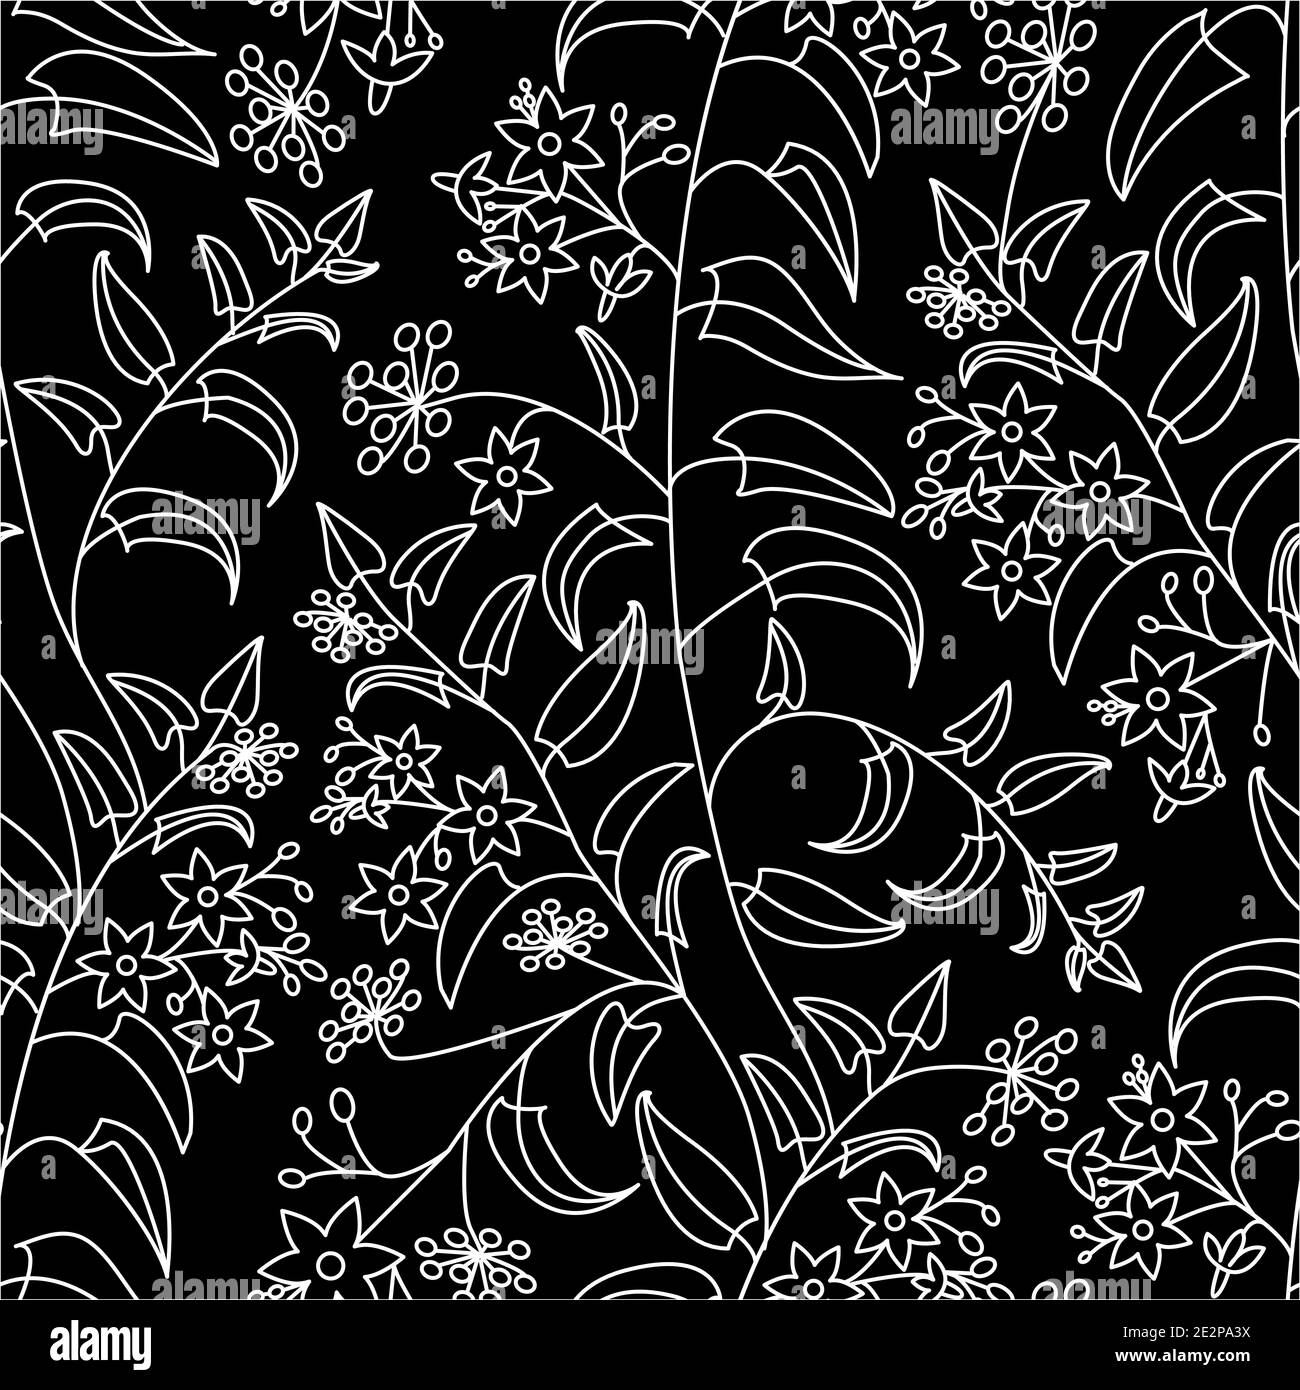 Ombra notturna. Motivo decorativo floreale. Motivo senza cuciture di contorni bianchi su sfondo nero Illustrazione Vettoriale